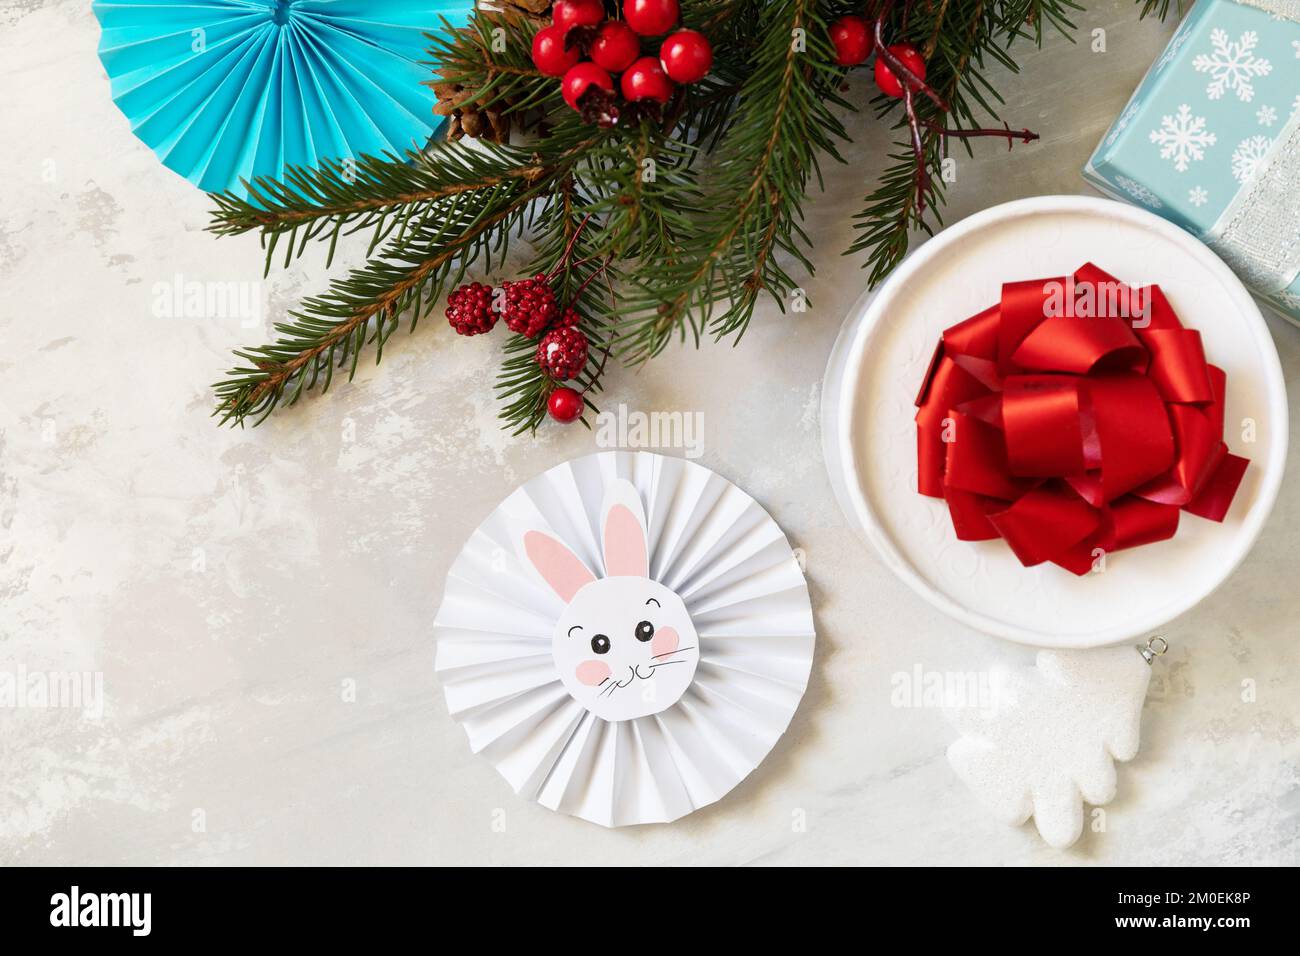 Weihnachtshintergrund mit Weihnachtsbaum, Geschenkboxen und Symbol des Jahres Mond, chinesischer Kalender, Jahr des Hasen. Wintersaison Grußkarte. Anzeigen Stockfoto